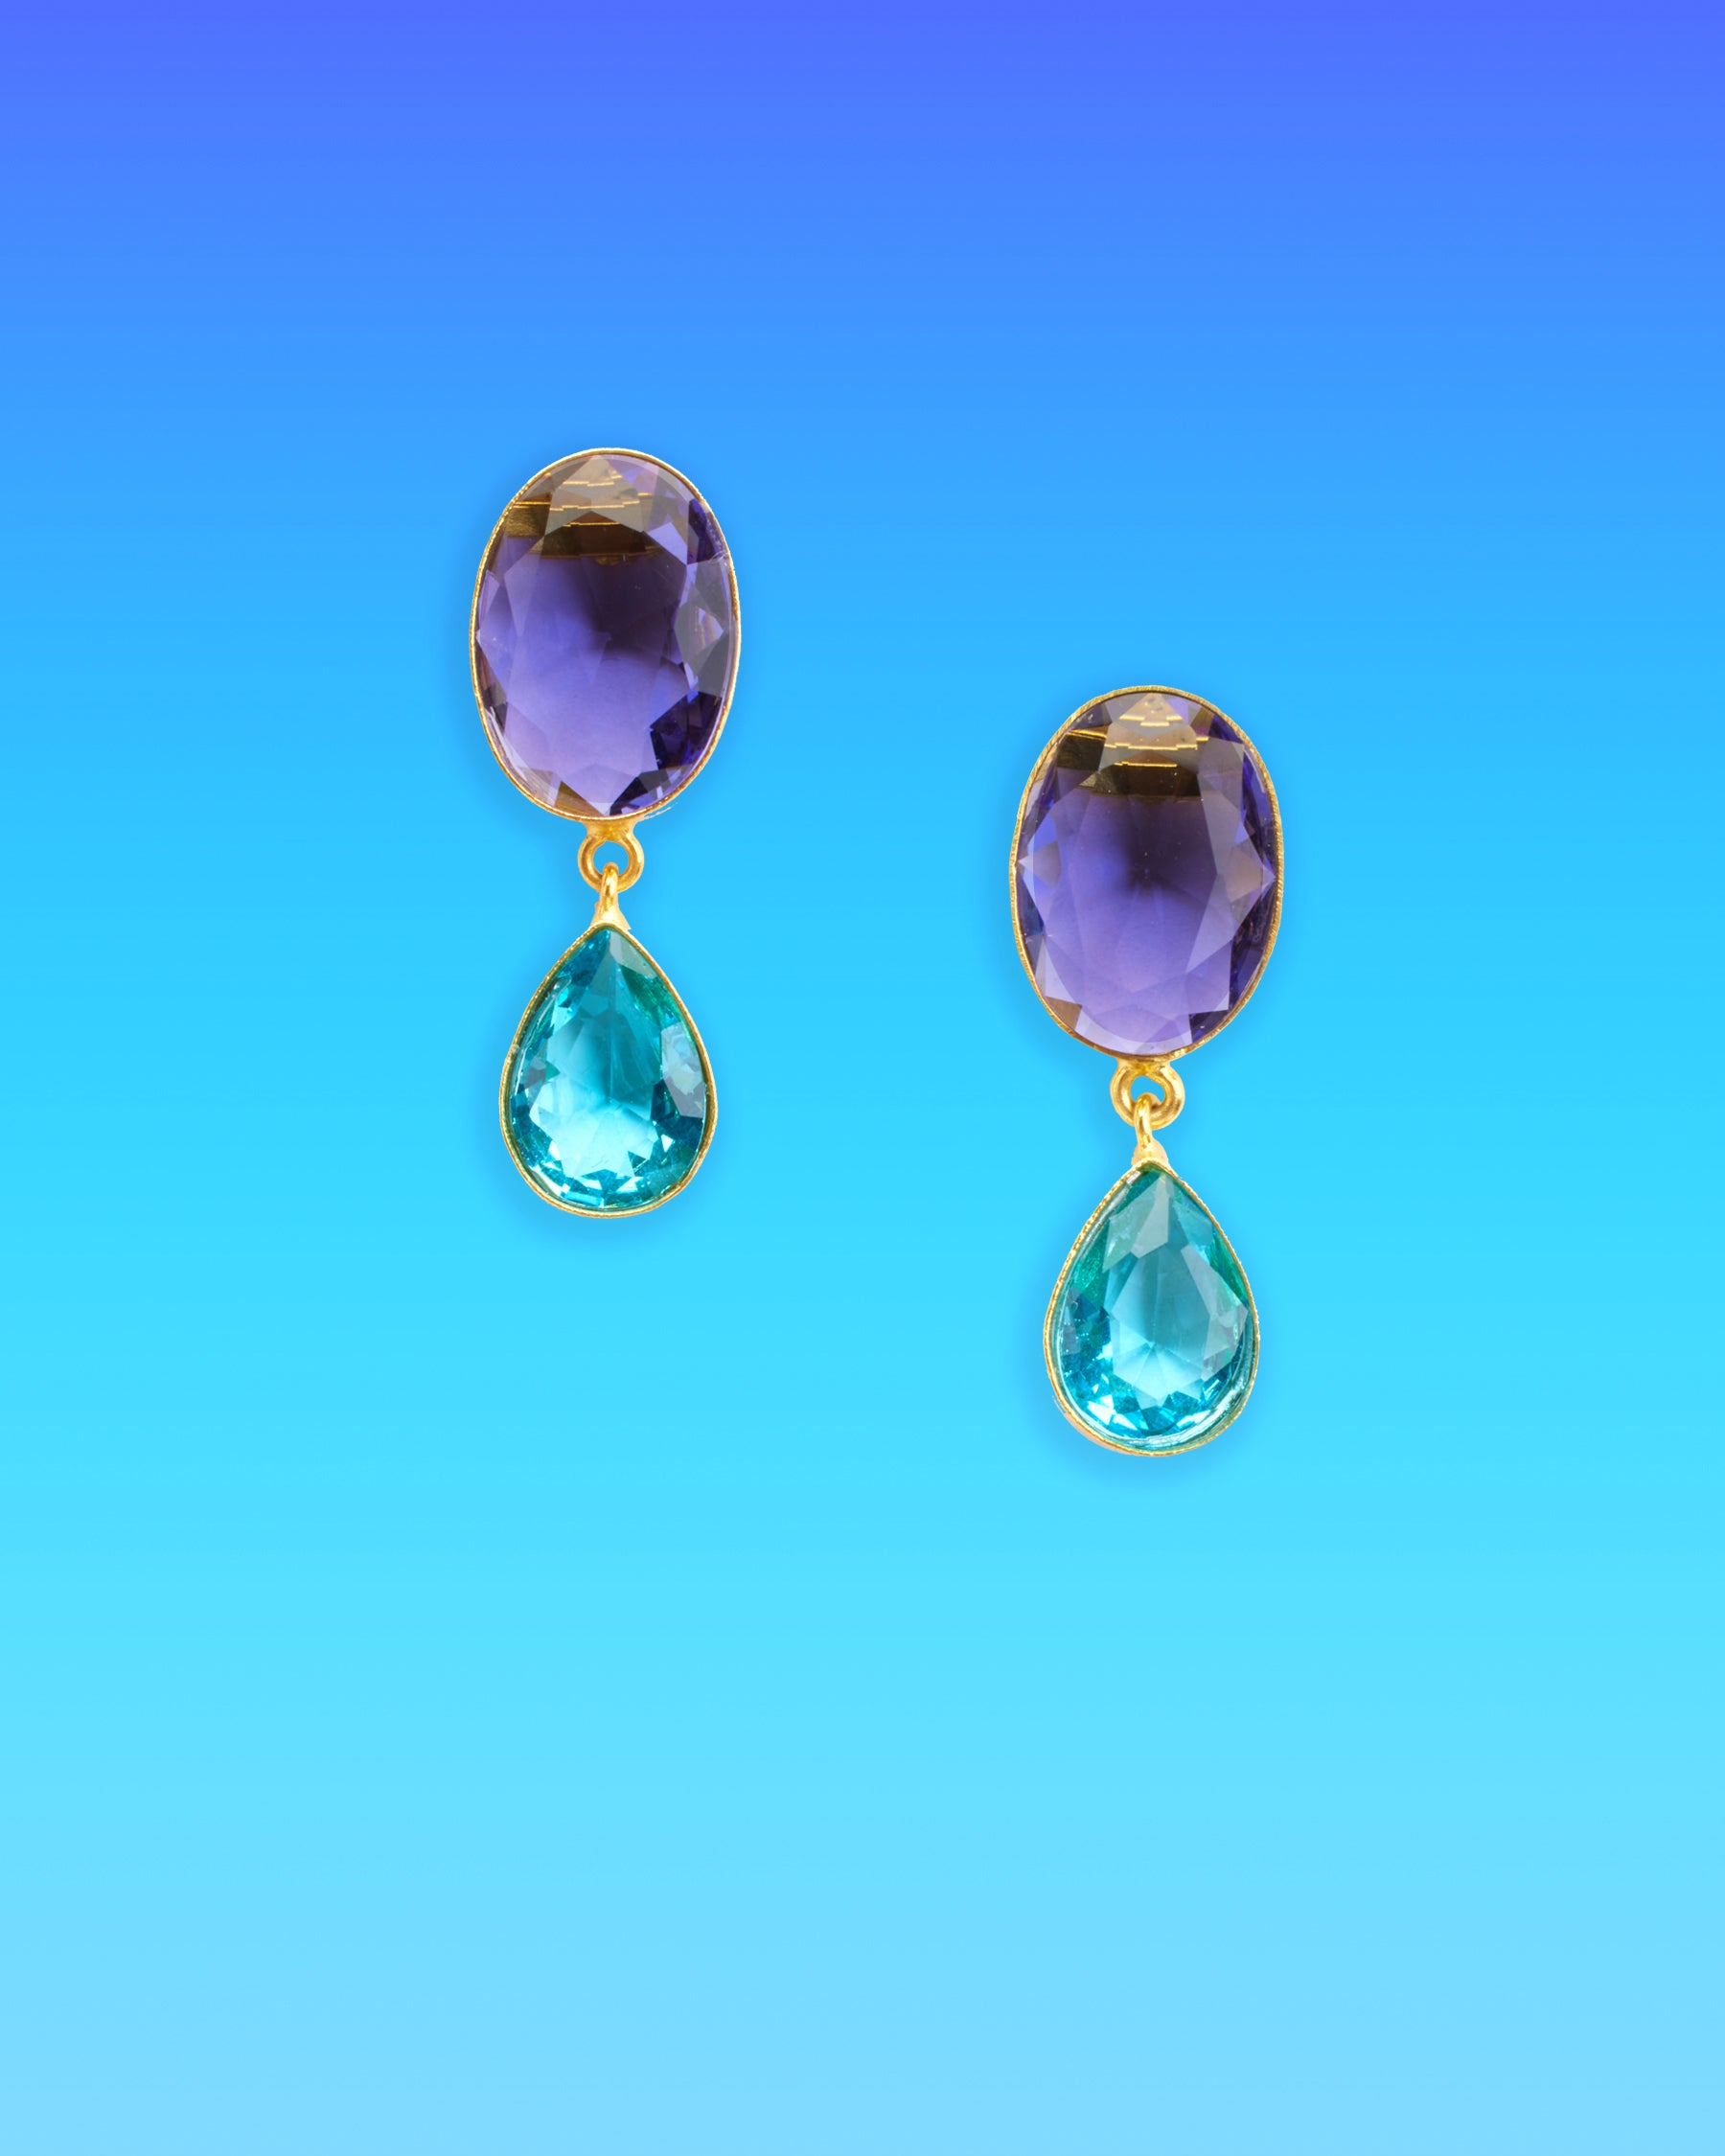 Chiara Dewdrop Earrings in Amethyst Purple and Crystal Blue